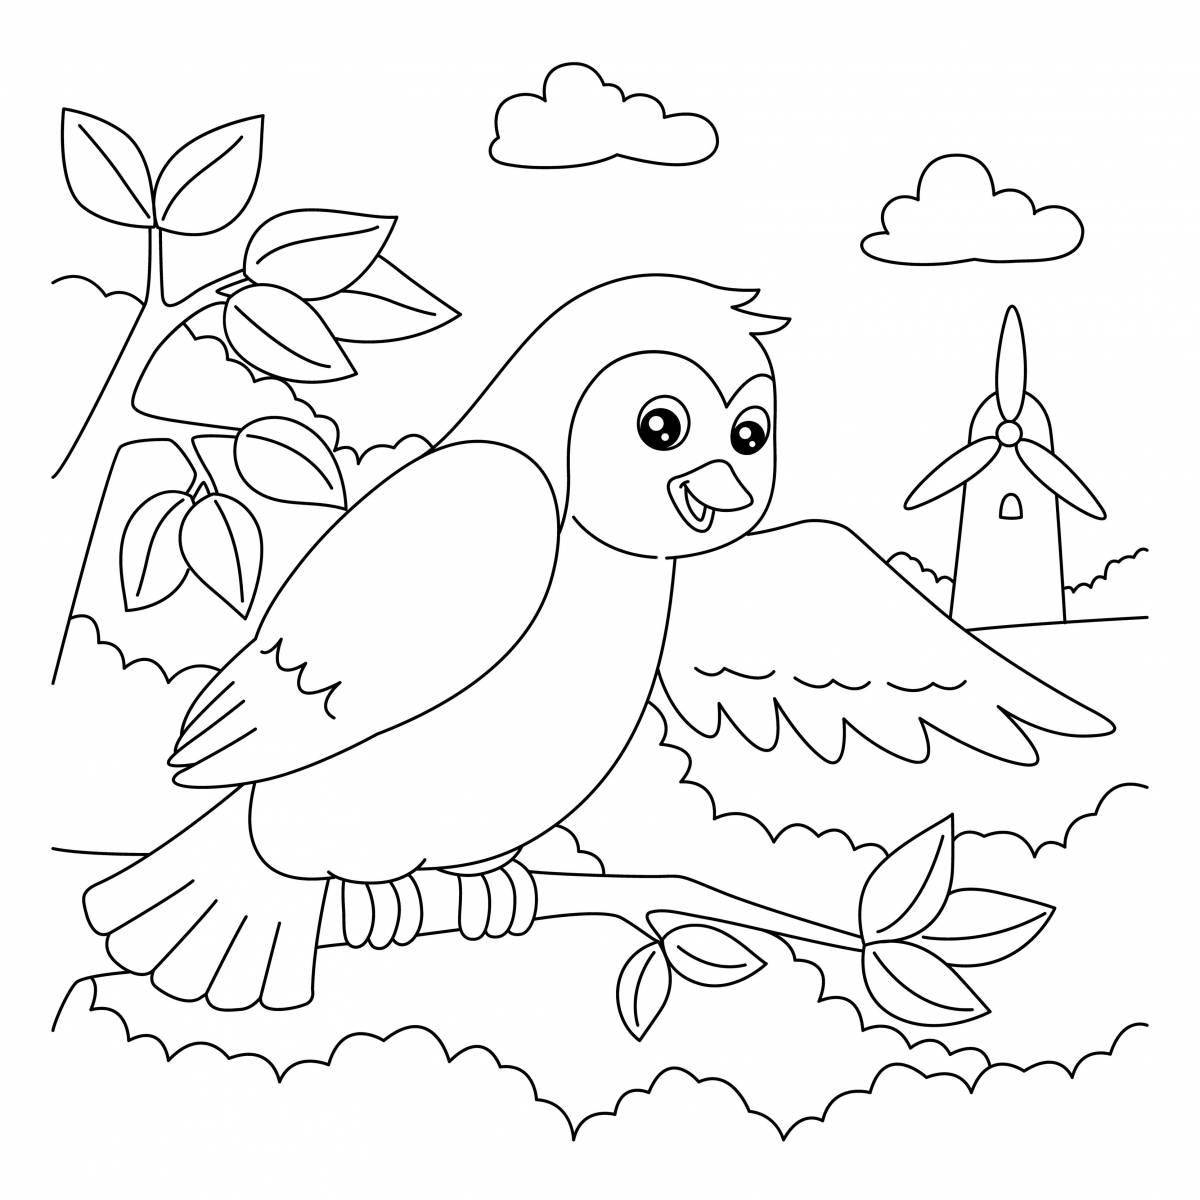 Увлекательная раскраска птиц для дошкольников 2-3 лет